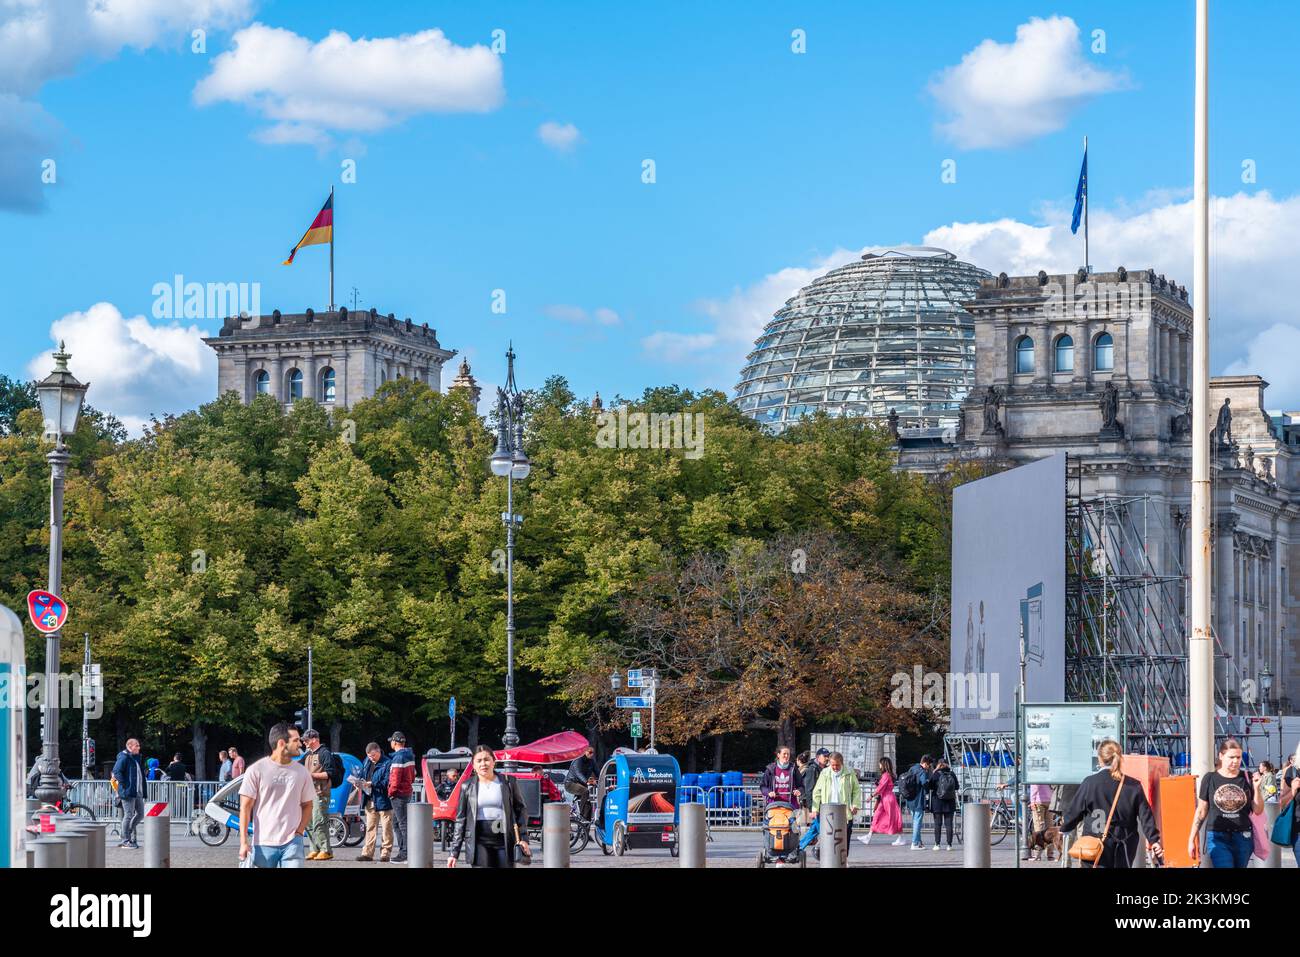 Platz des 18. Vue de März sur le Reichstag allemand, Berlin, Allemagne, Europe Banque D'Images